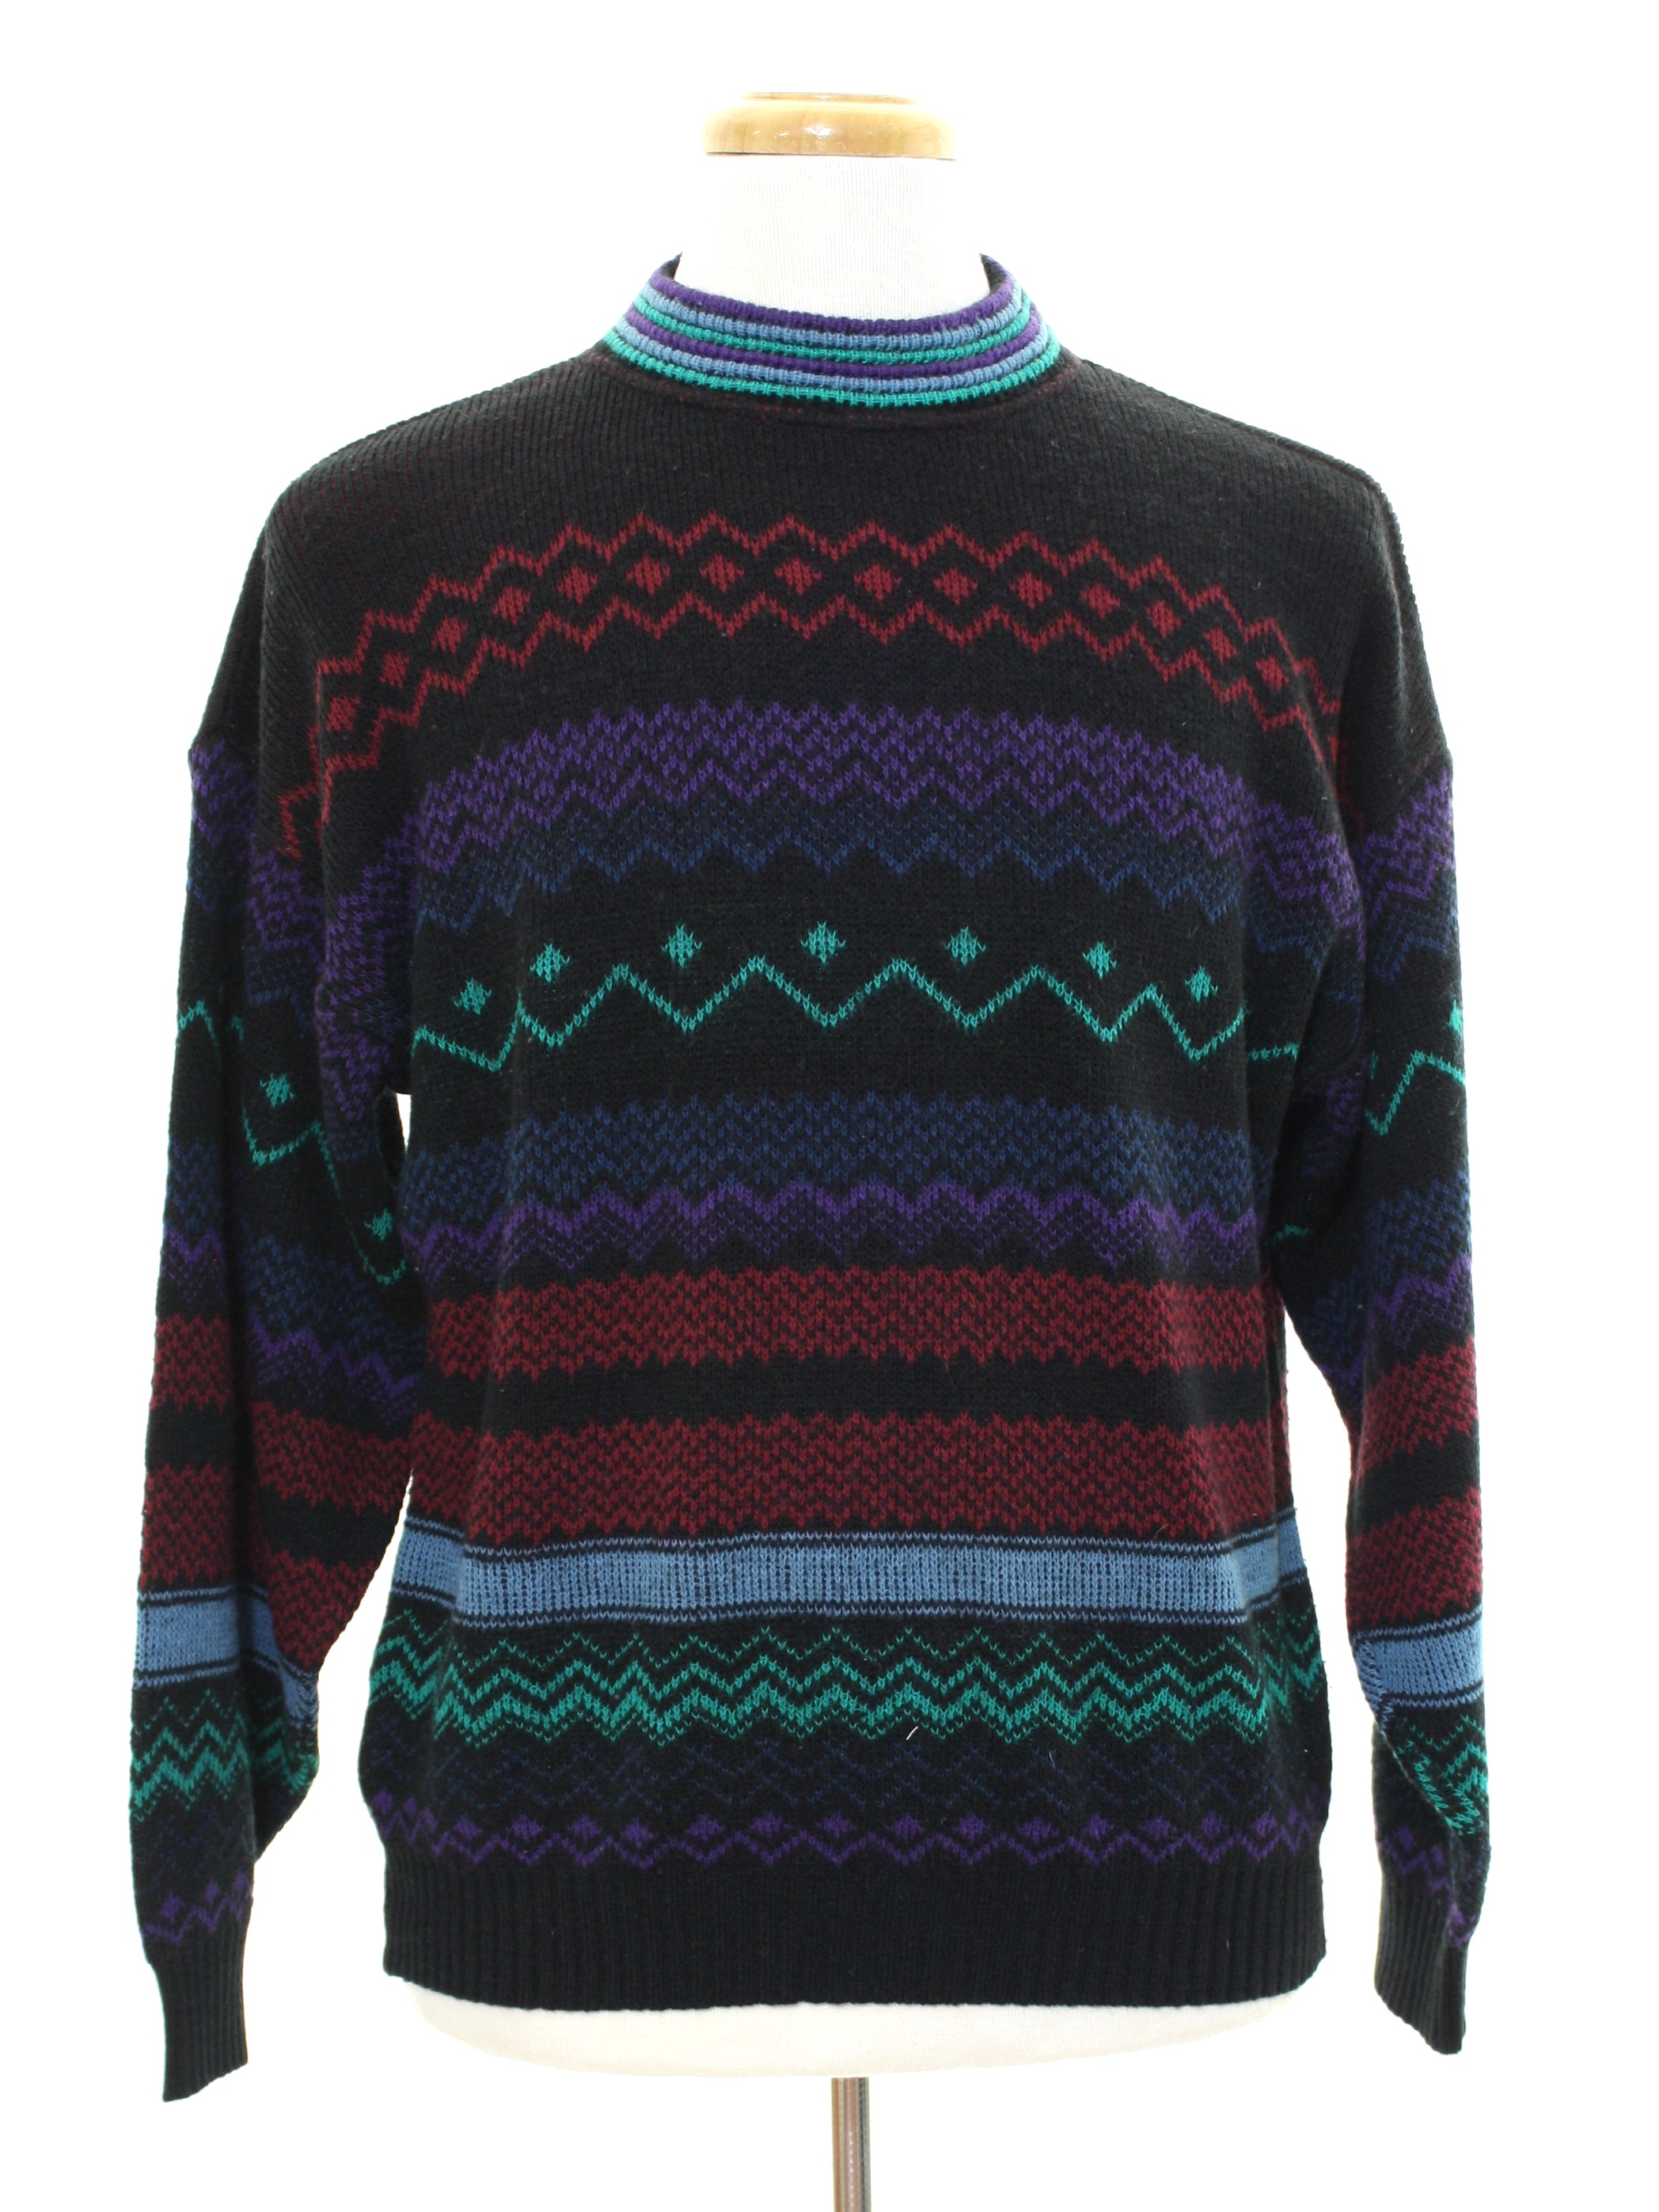 80s Retro Sweater: 80s -Colore- Mens black background acrylic pullover ...